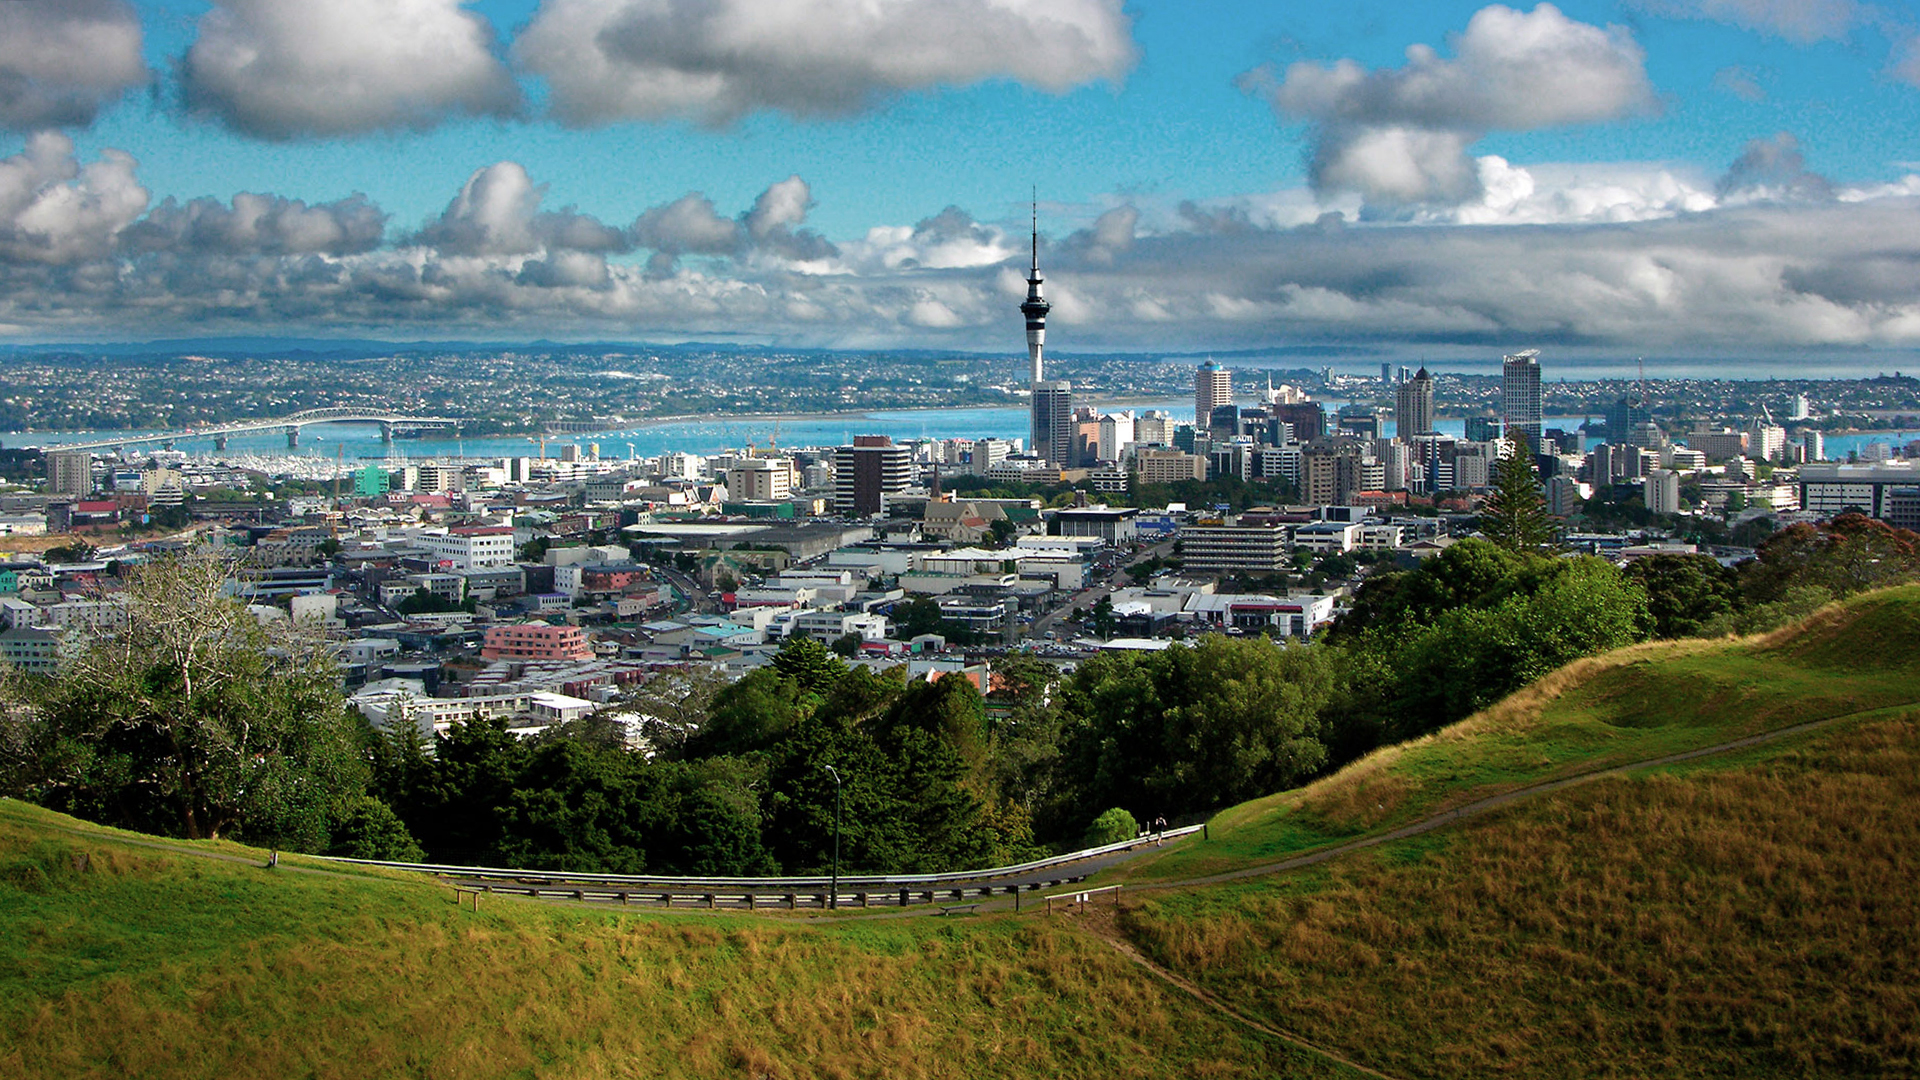 Skyline von Auckland (Neuseeland) | picture alliance / Bildagentur-o